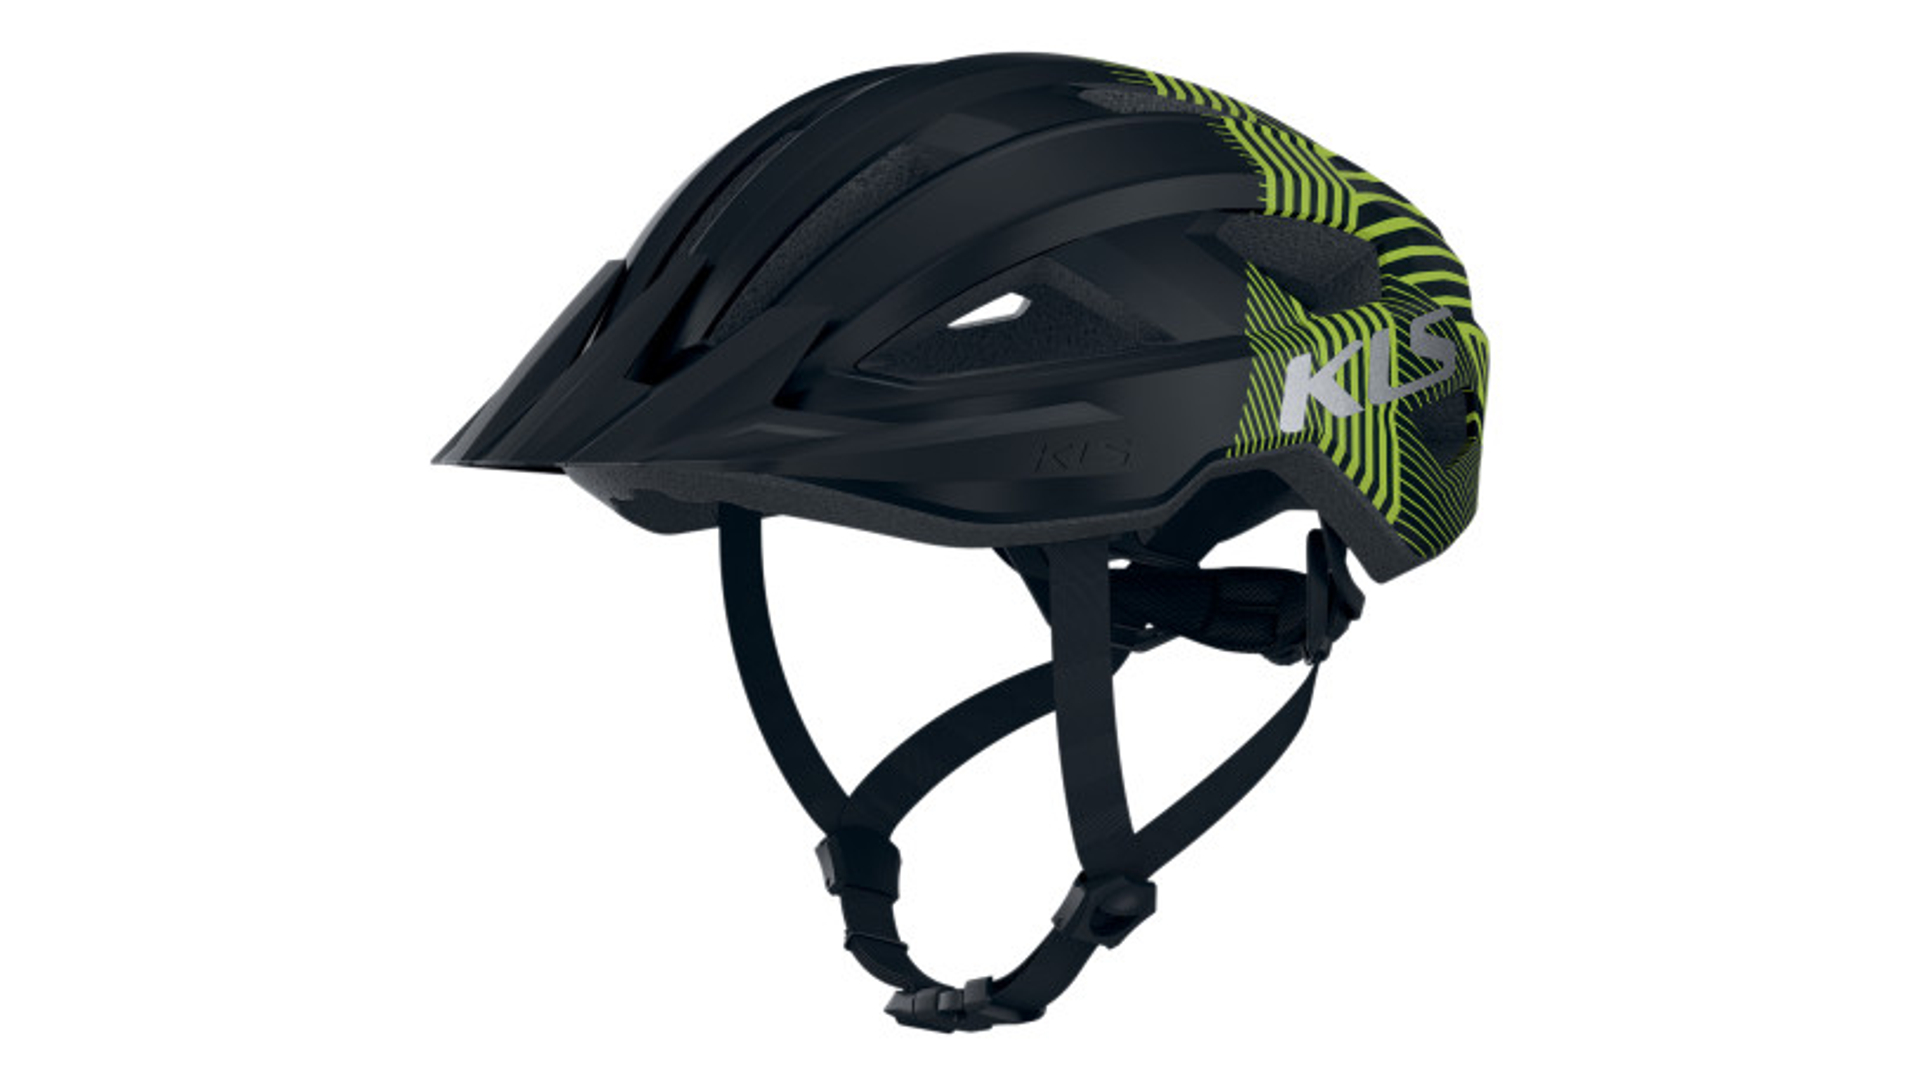 KELLYS Daze MTB XC kerékpáros sisak, black-green, M/L (55-58 cm)